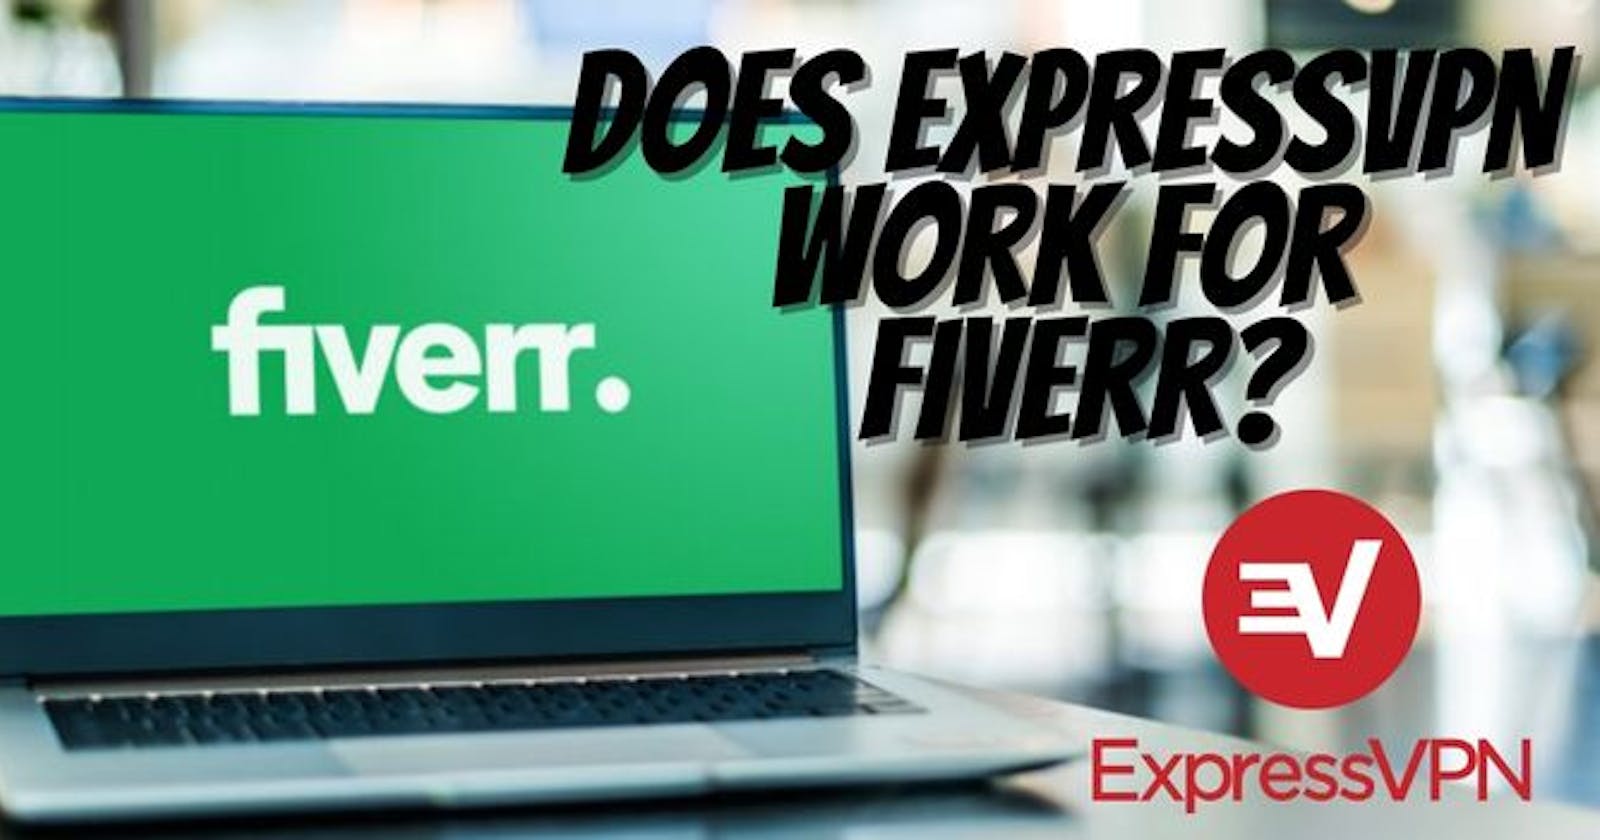 Does ExpressVPN Work For Fiverr?